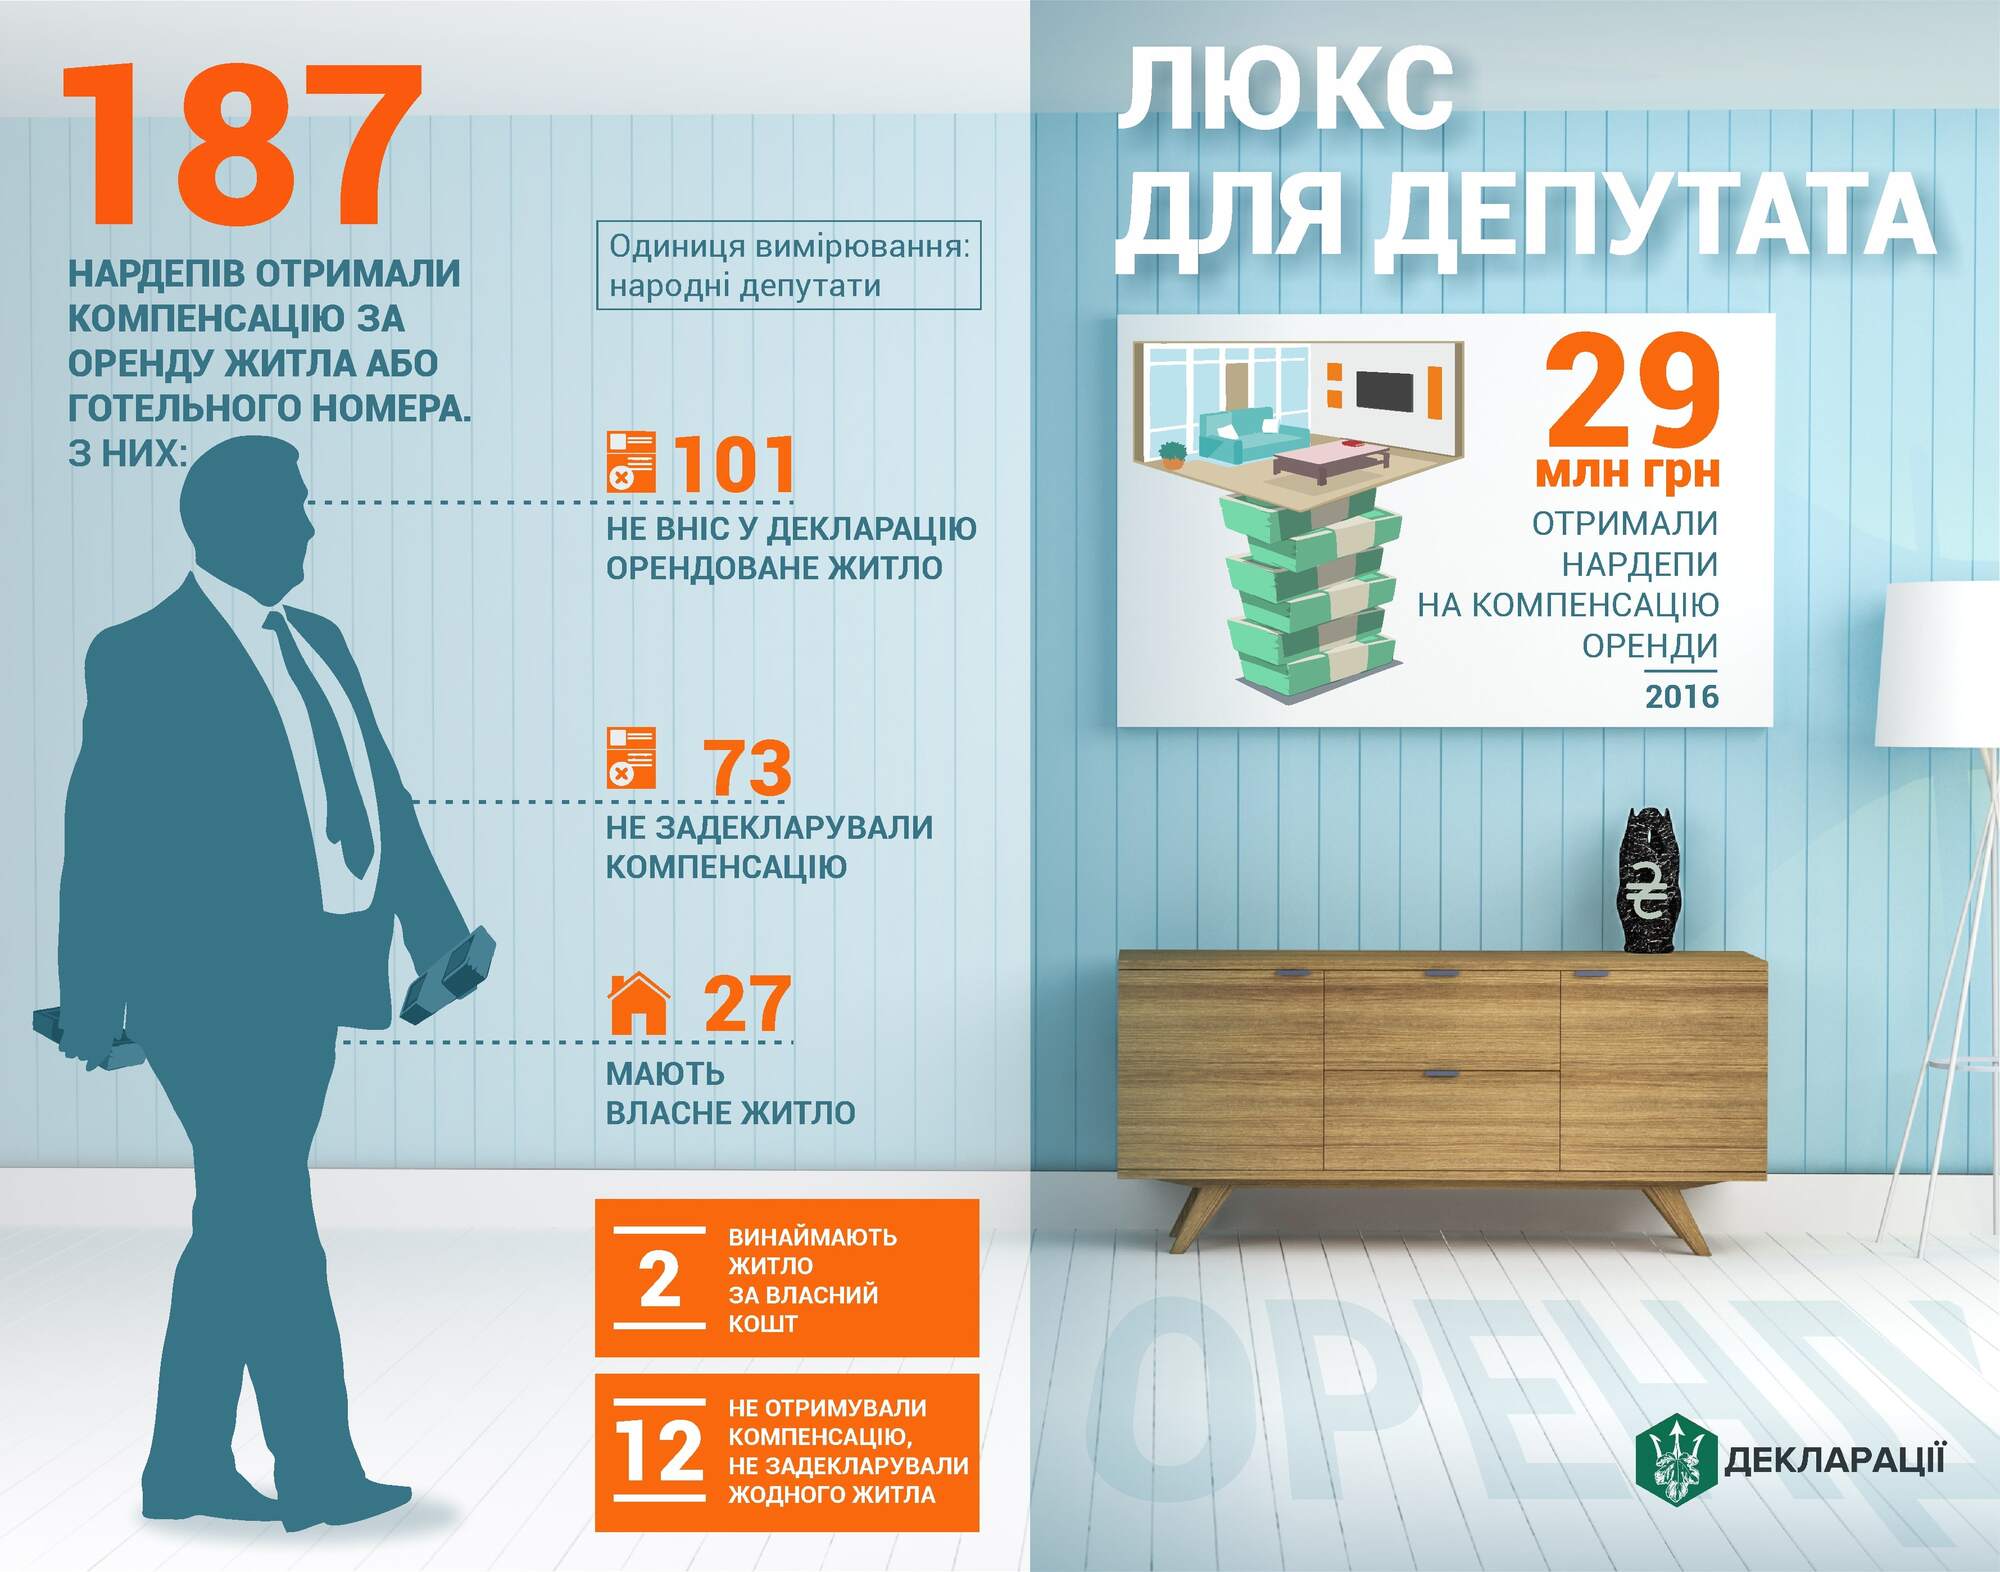 Стало известно, сколько нардепов получили деньги на отель, имея жилье в Киеве